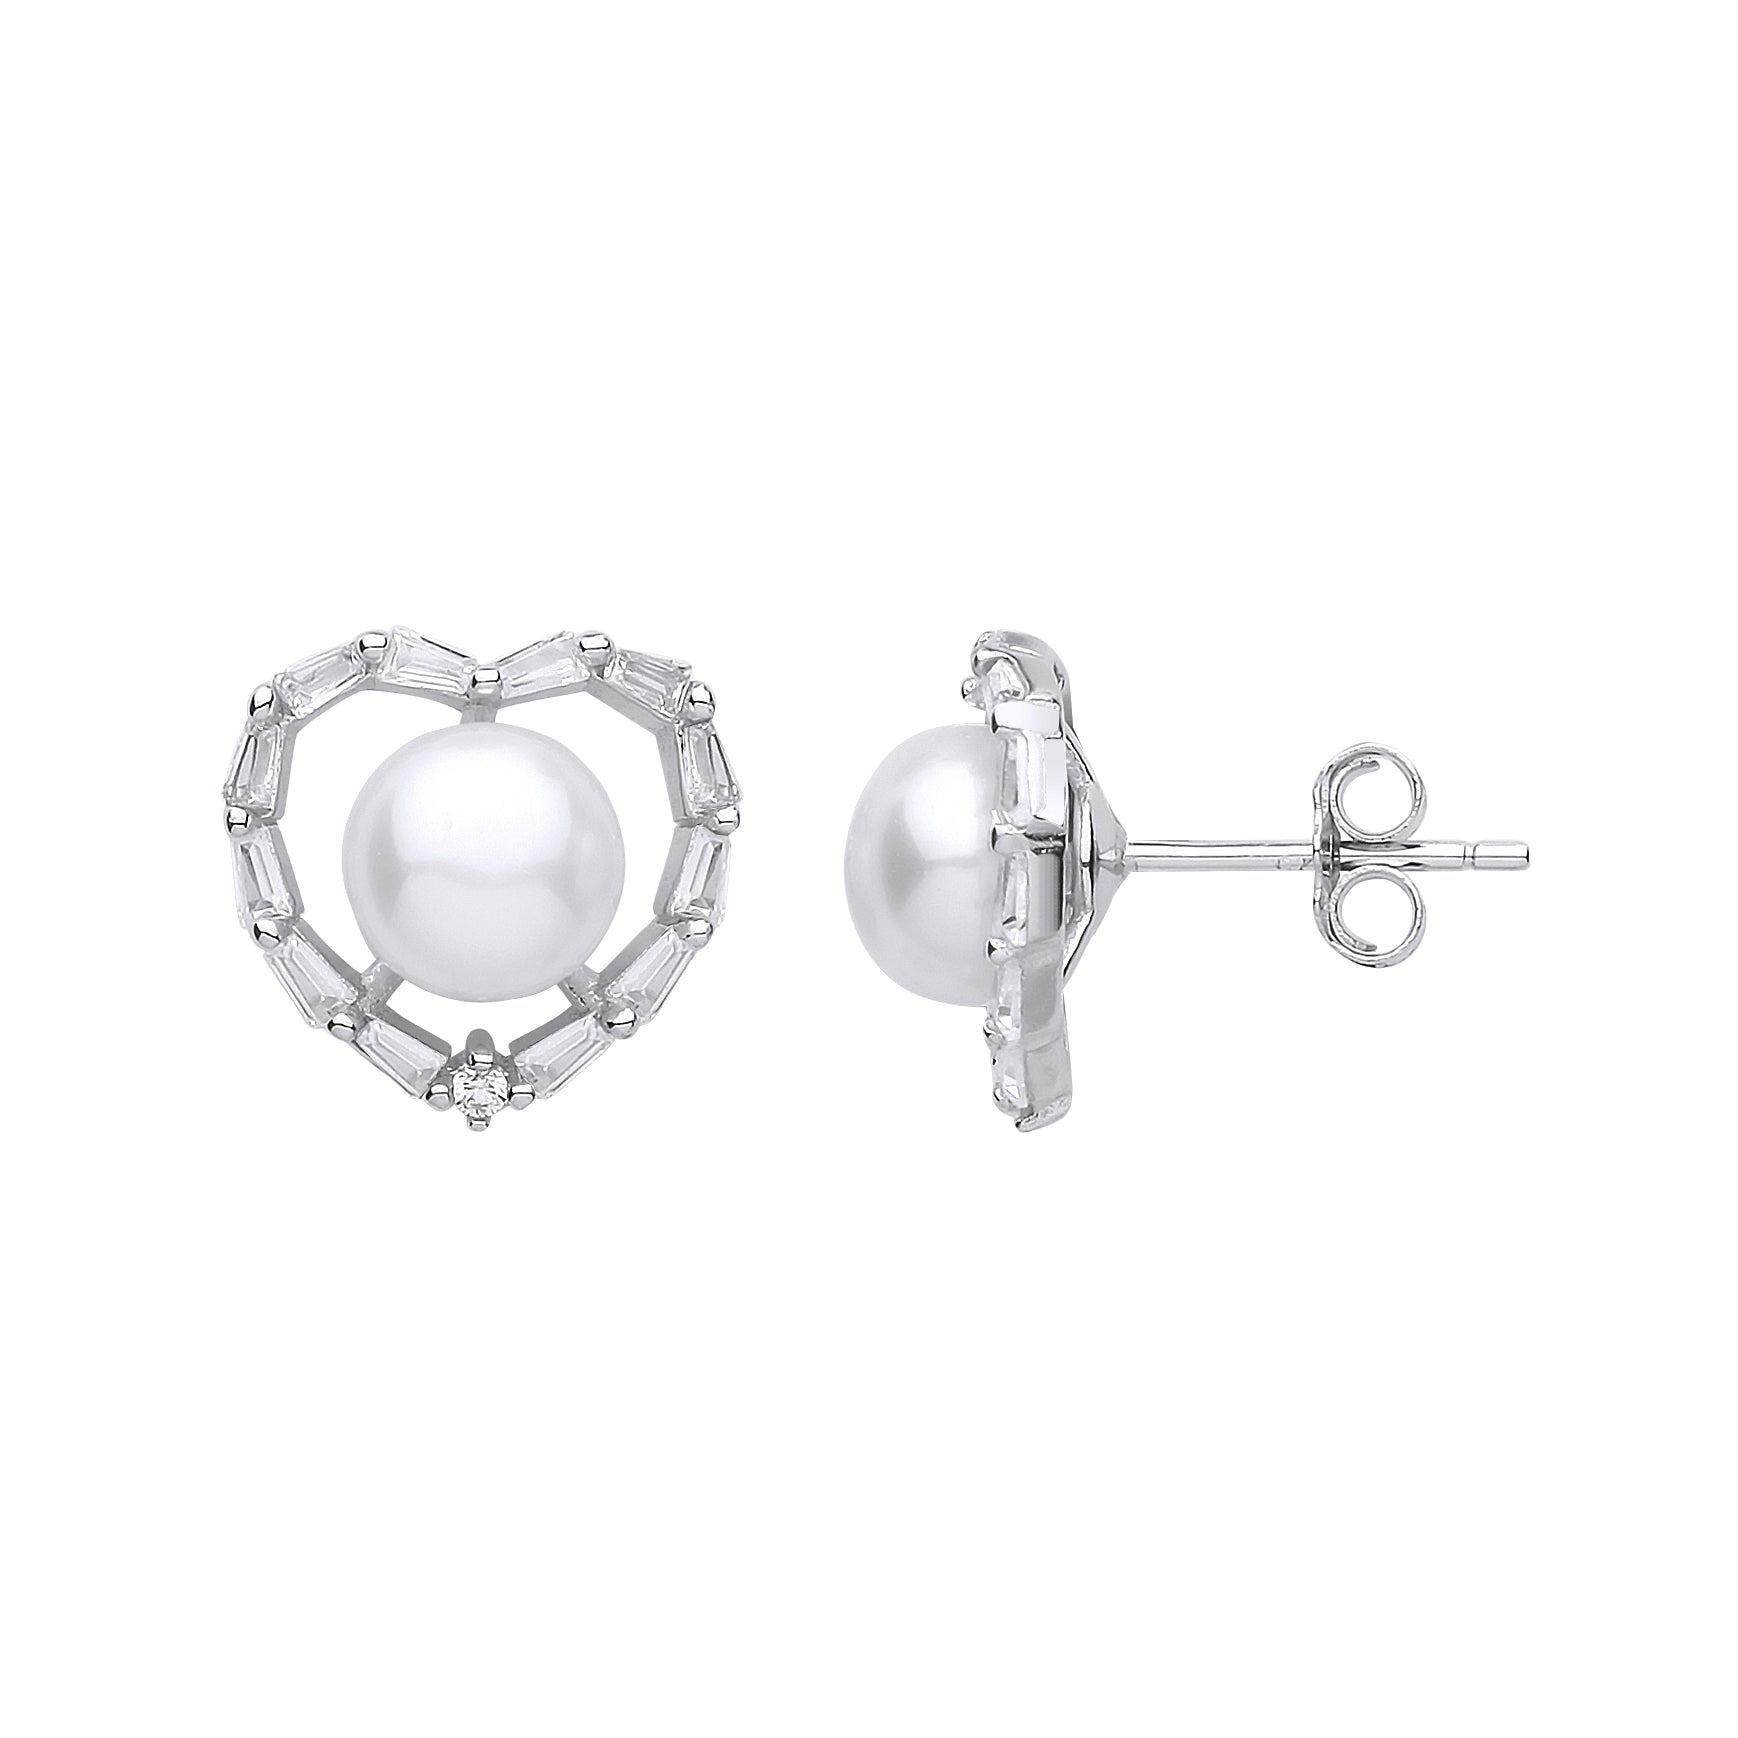 Silver  Baguette CZ Pearl Full Moon Love Heart Stud Earrings 7mm - GVE906